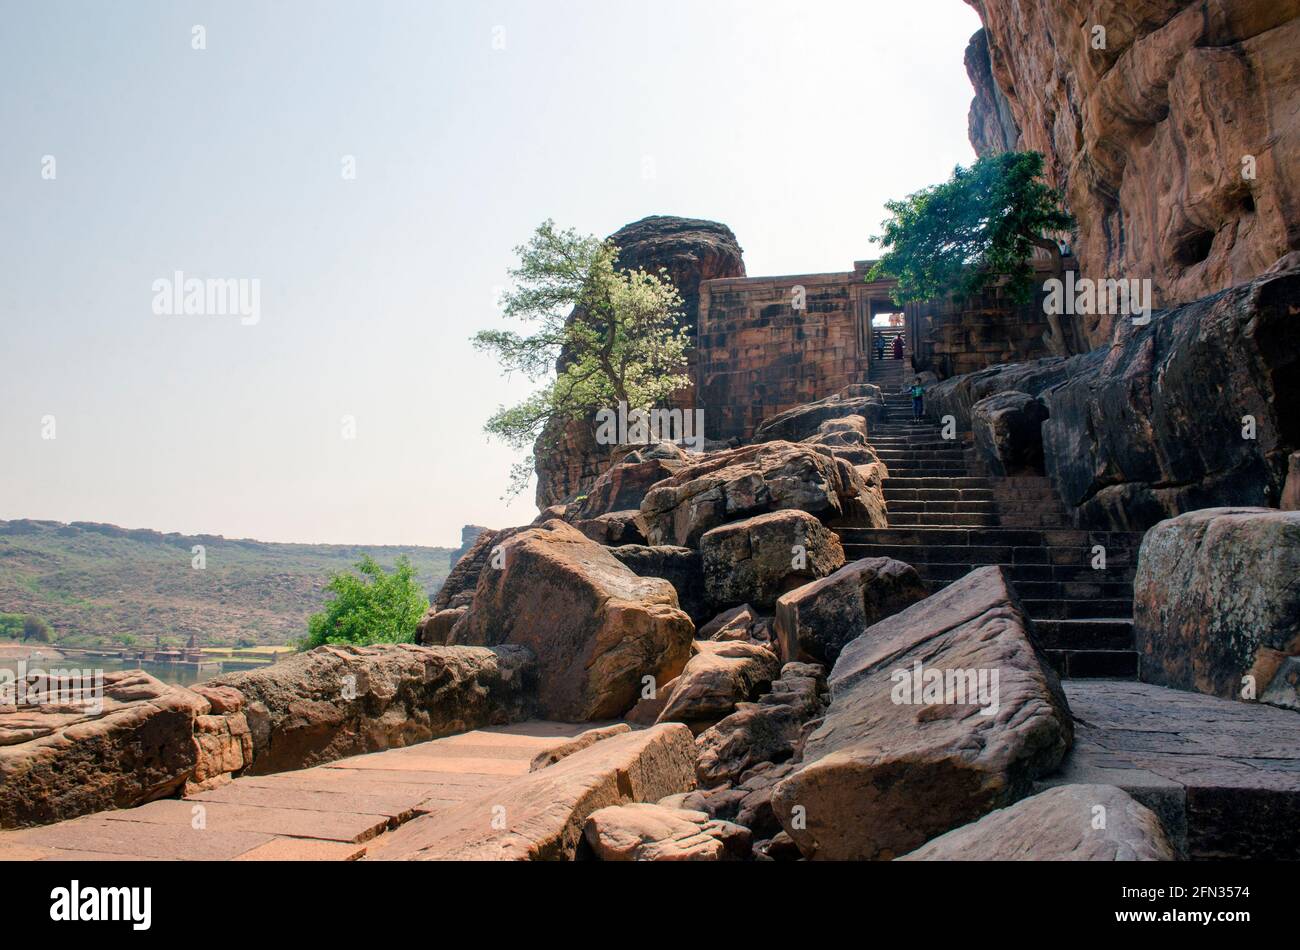 Photos de la route et des escaliers menant au temple de la grotte de Badami. Un arbre sur le côté de la route peut être vu dans le paysage éloigné avec lui. Banque D'Images